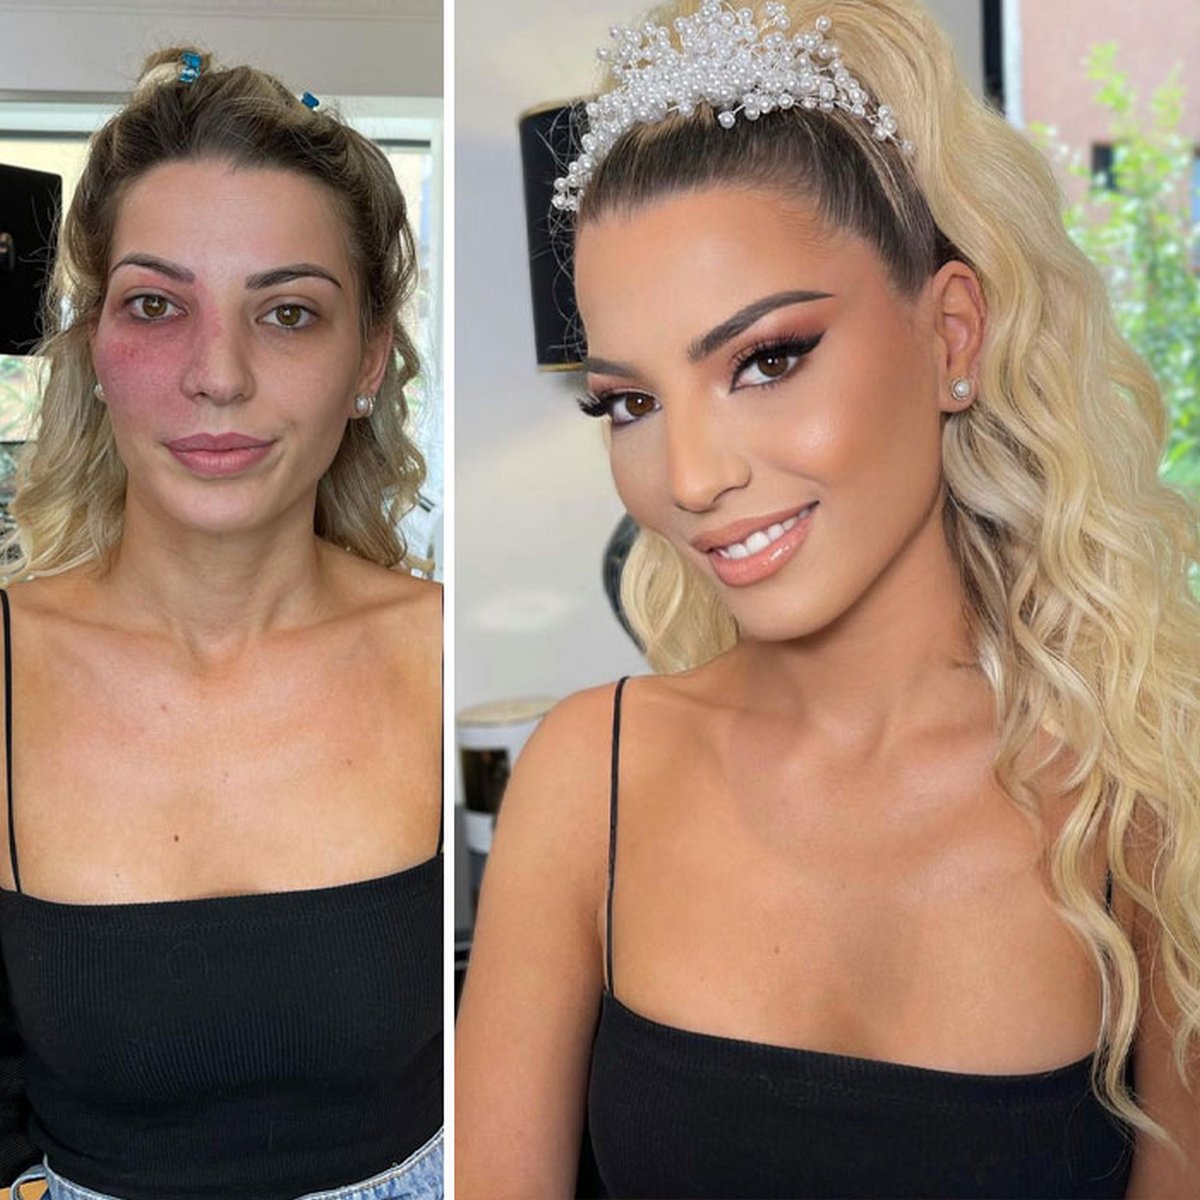 Voici des femmes avant et après leur maquillage de mariage